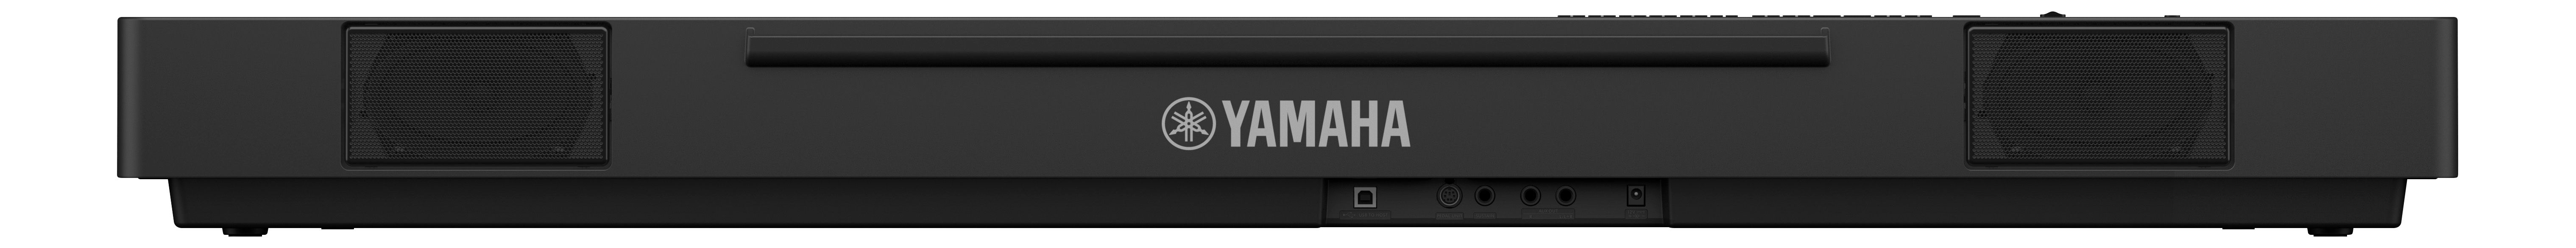 Yamaha P-225 Black - Piano digital portatil - Variation 4